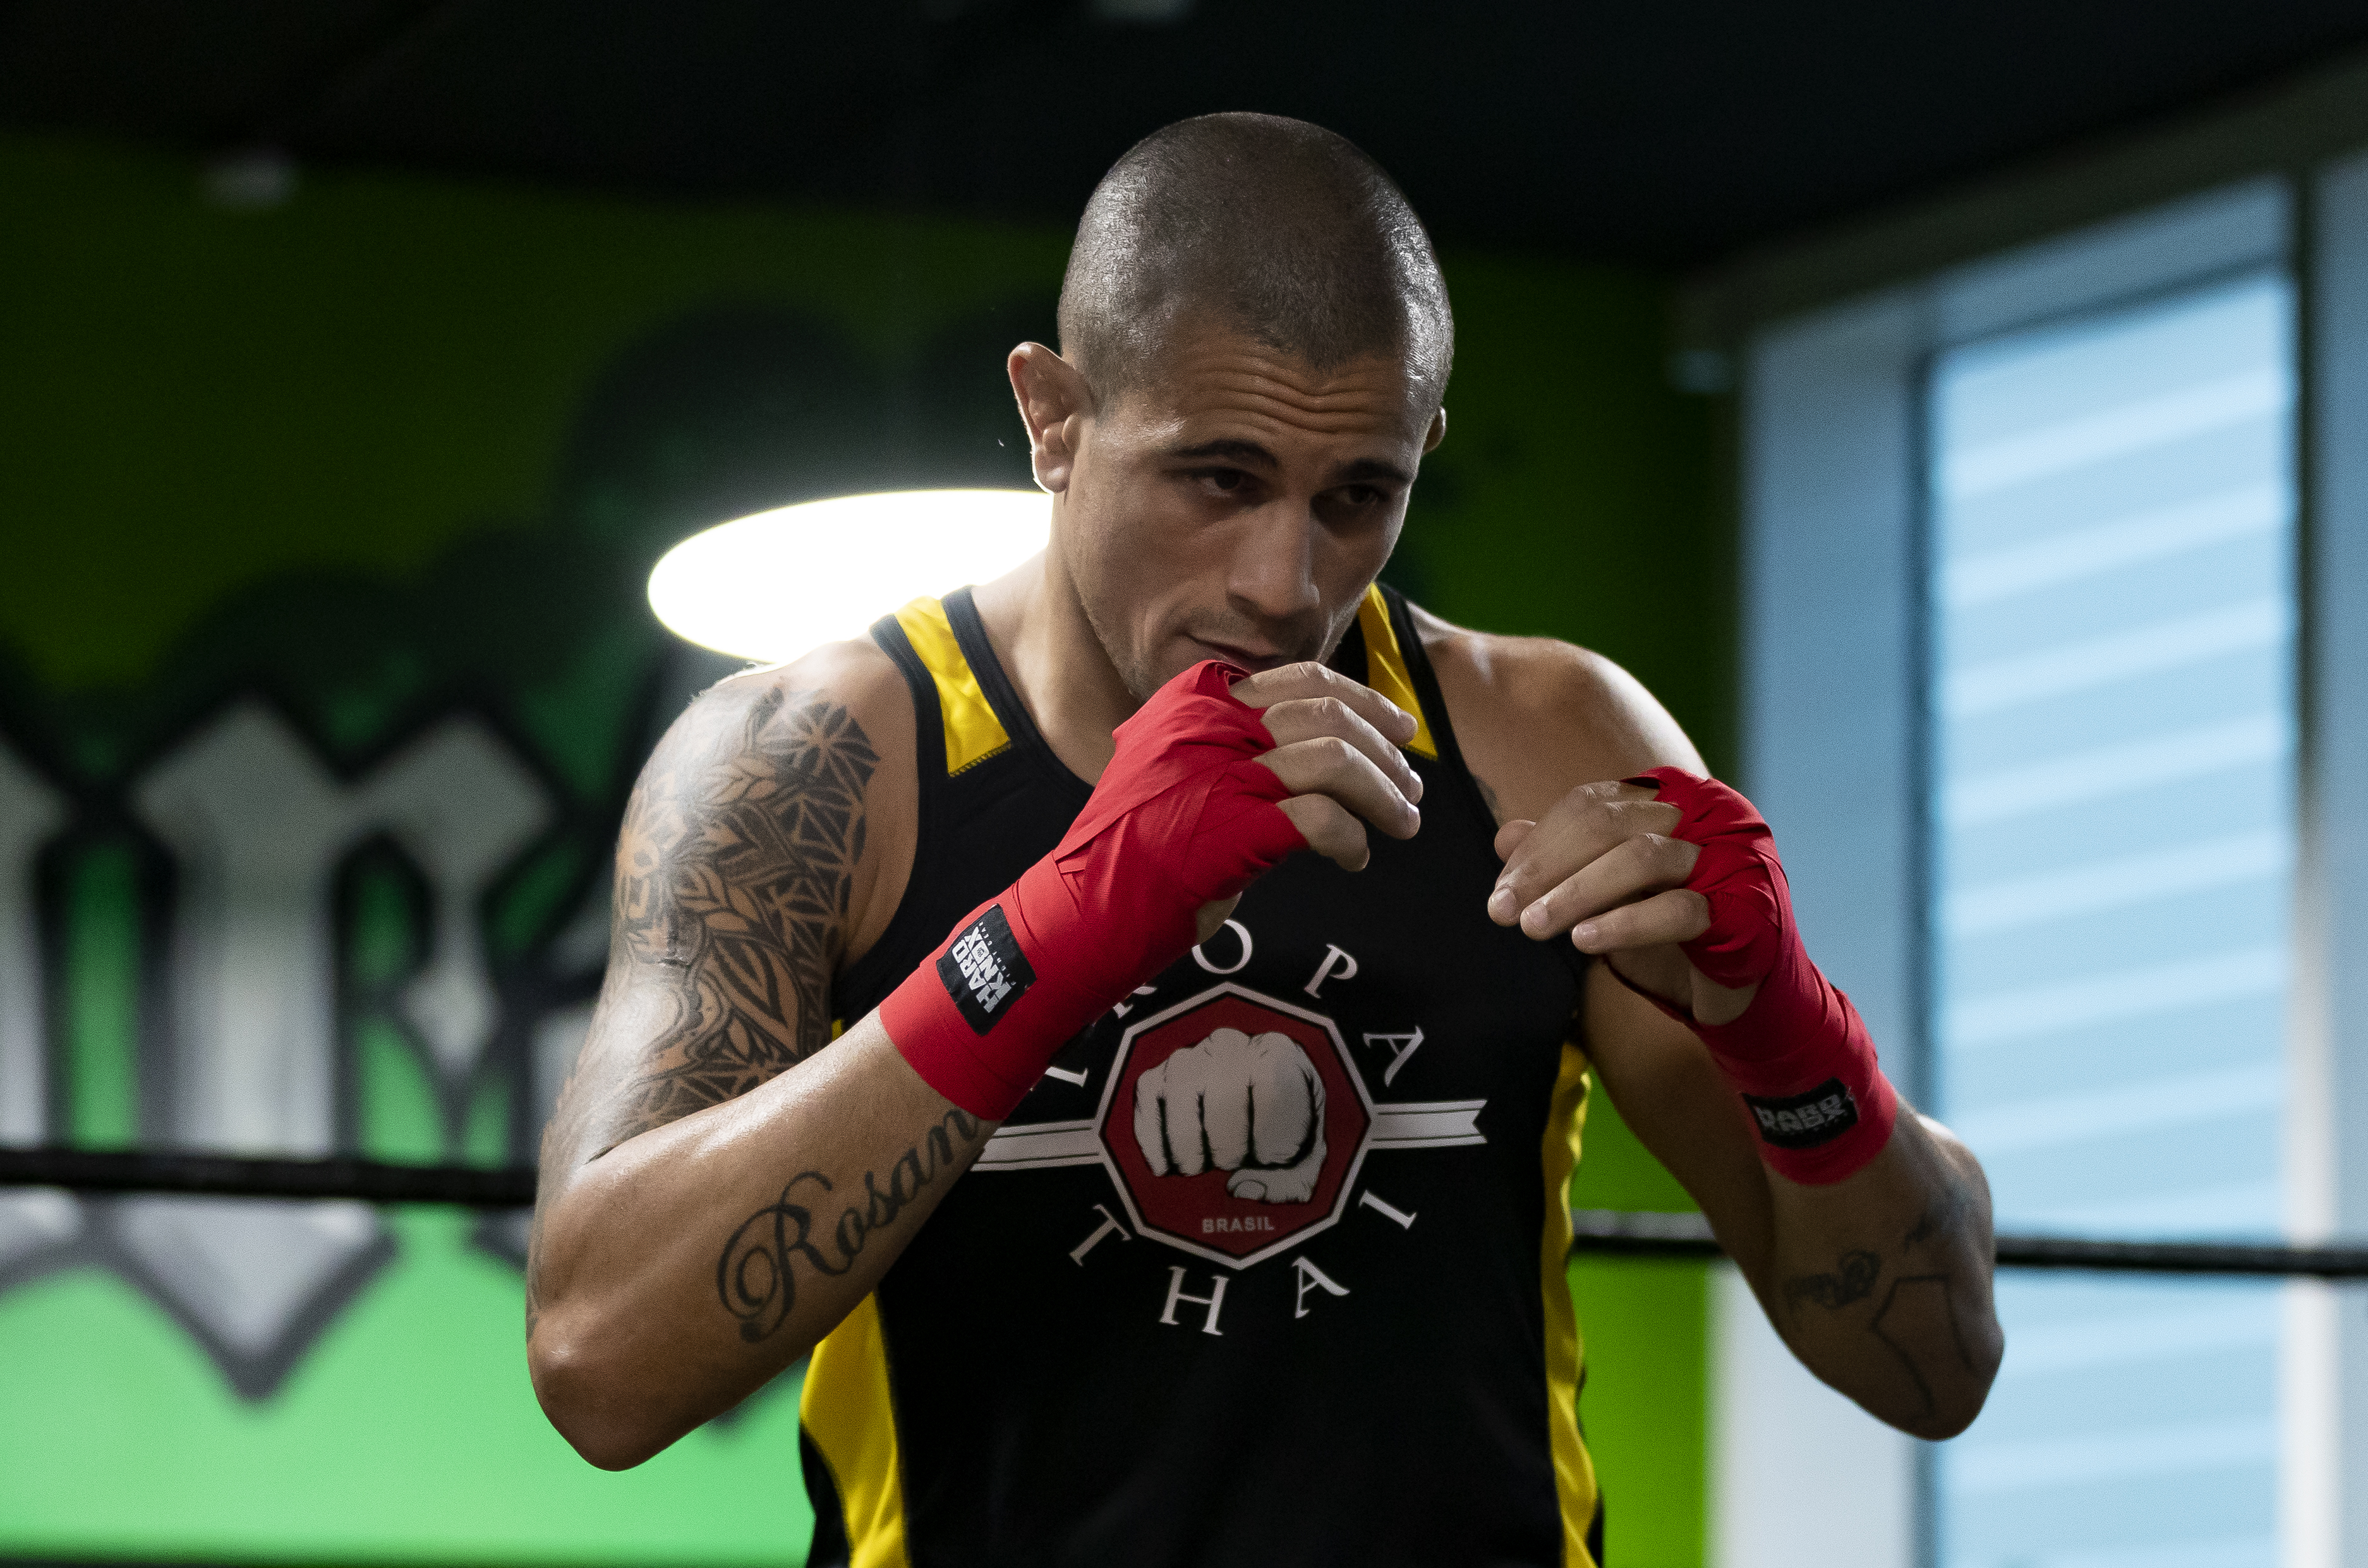 Anderson Silva set for May boxing return, facing Bruno Machado in Dubai